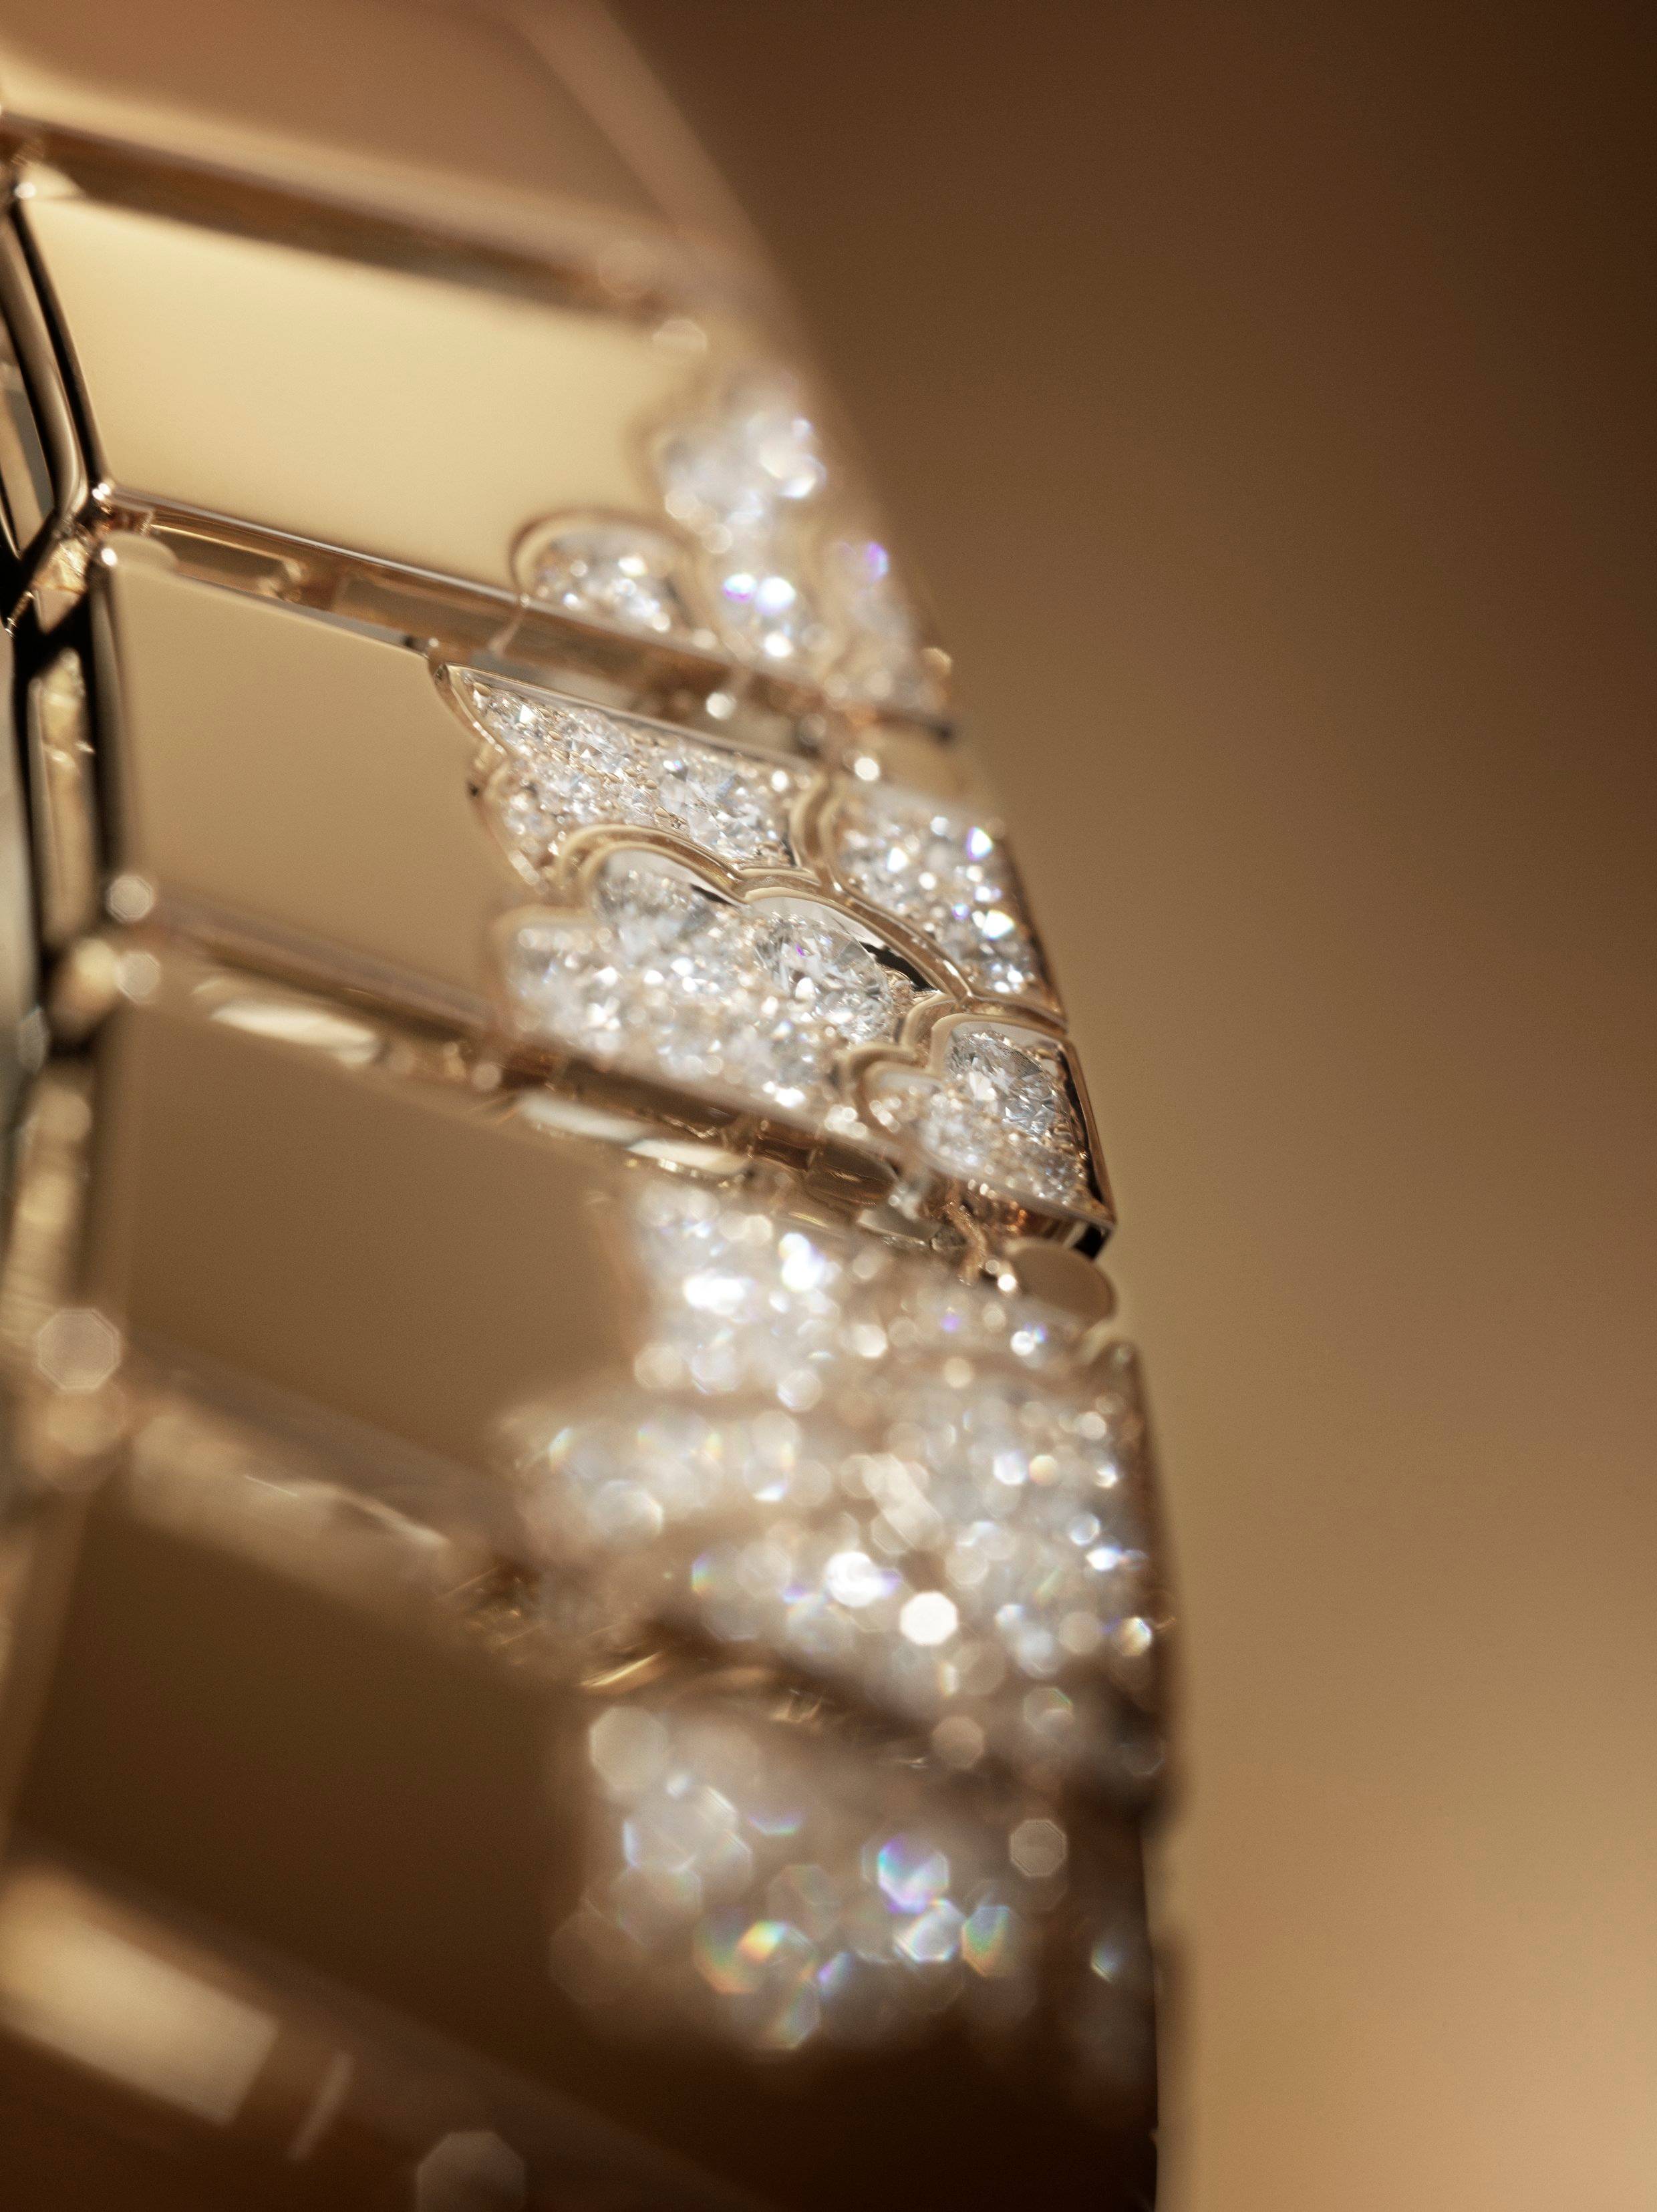 Chanel s’inspire des paravents de Coromandel dans sa nouvelle collection haute joaillerie